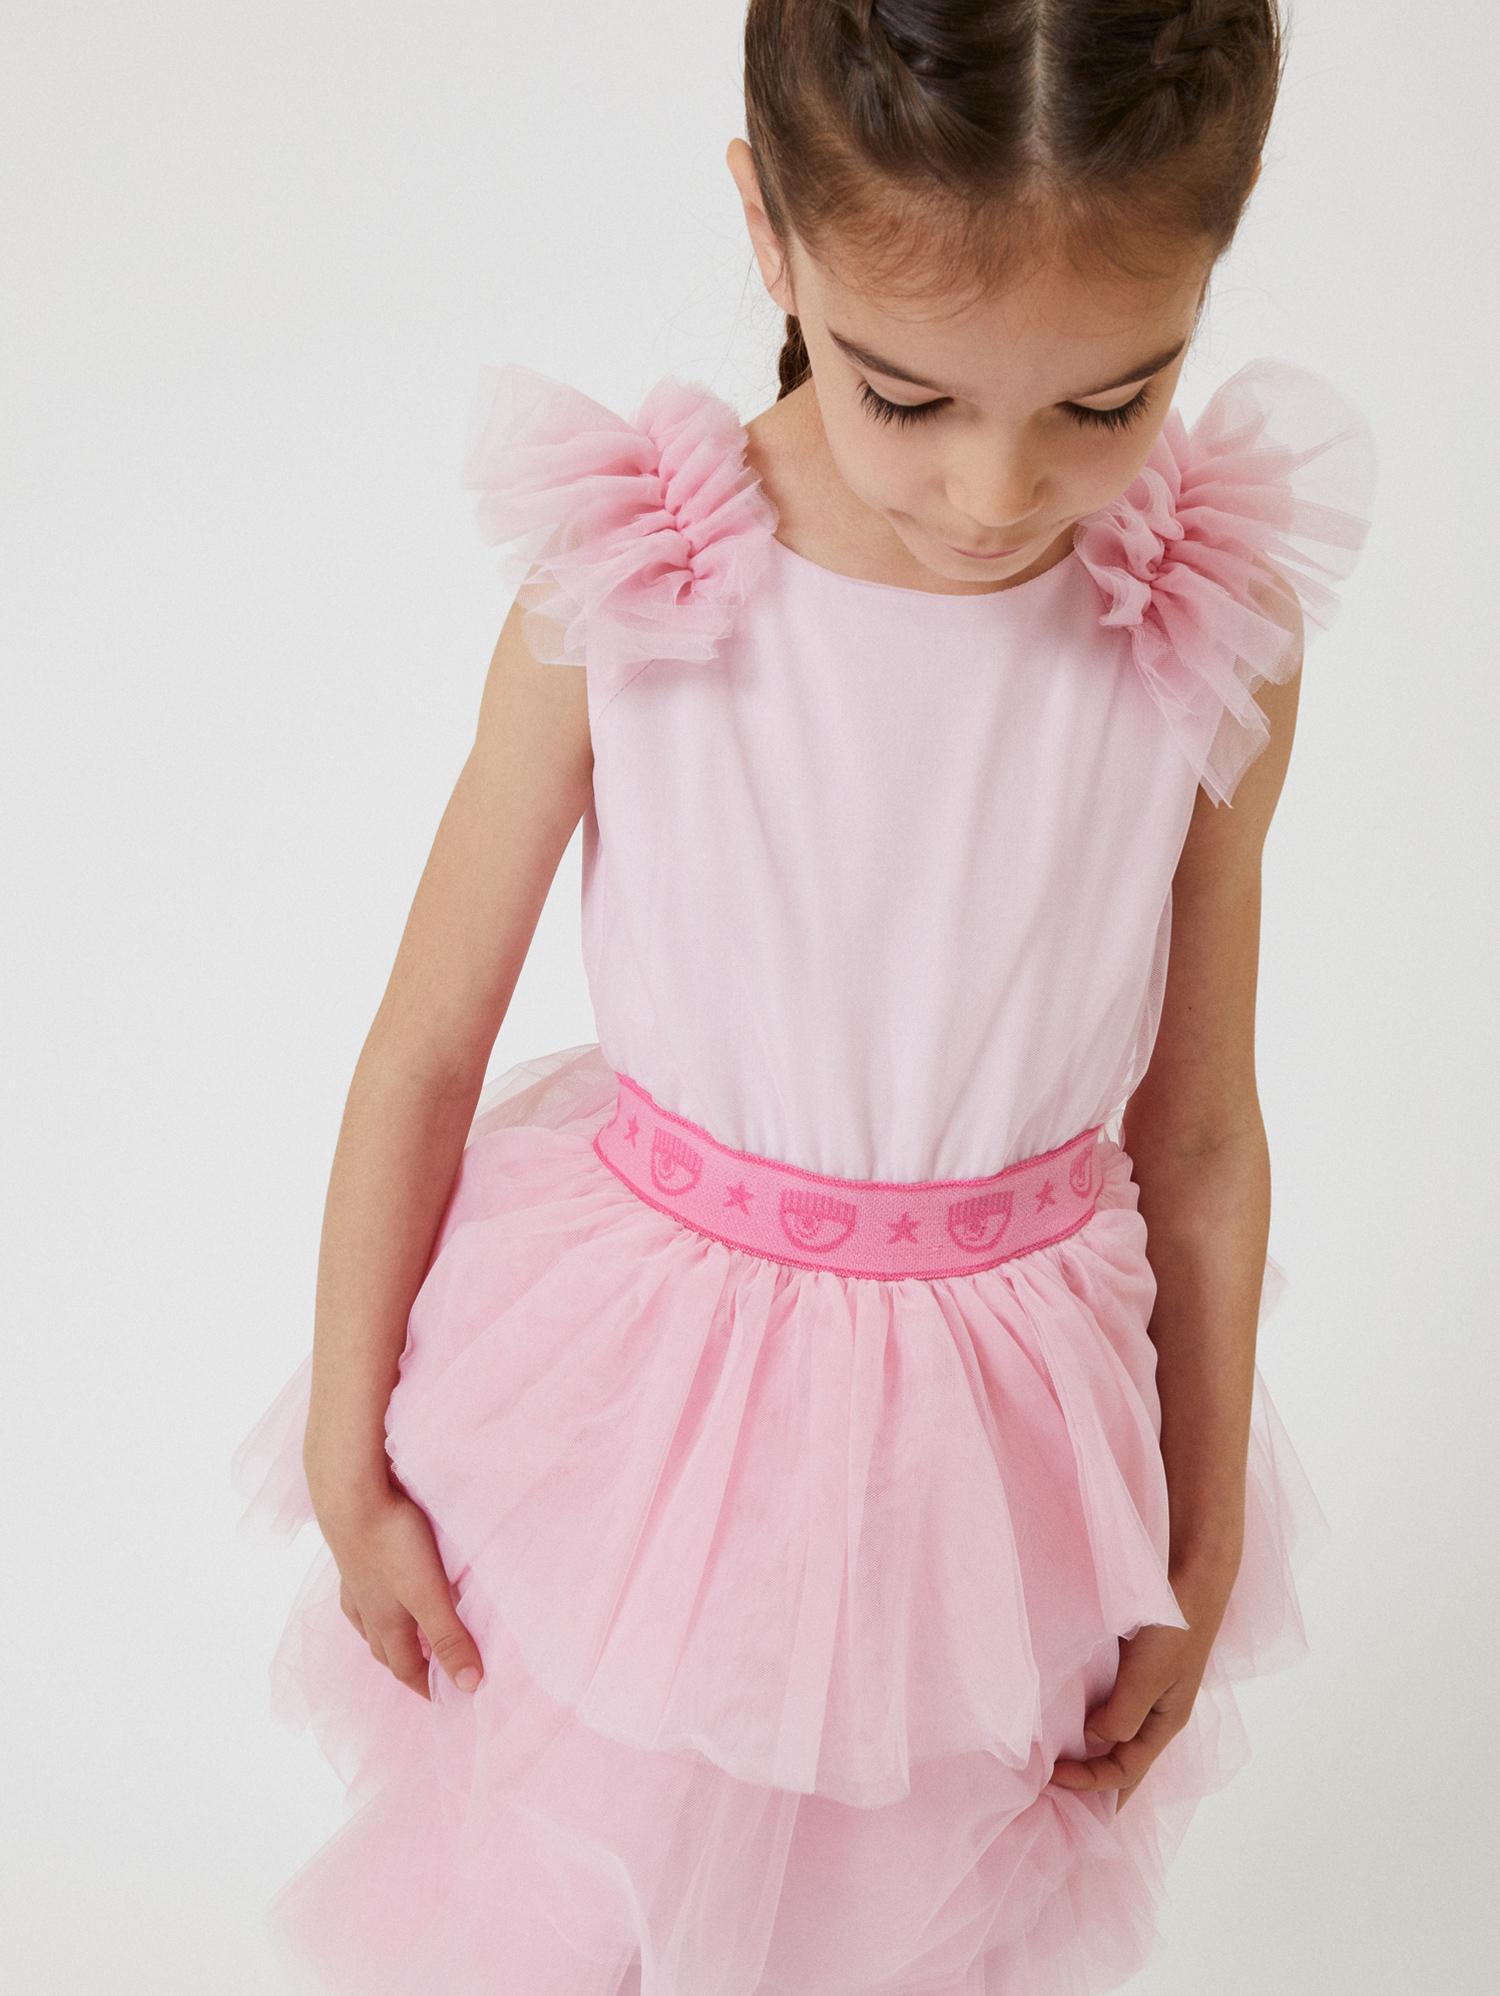 Shop Chiara Ferragni Cf Party Tulle Dress In Rosa Fairy Tale